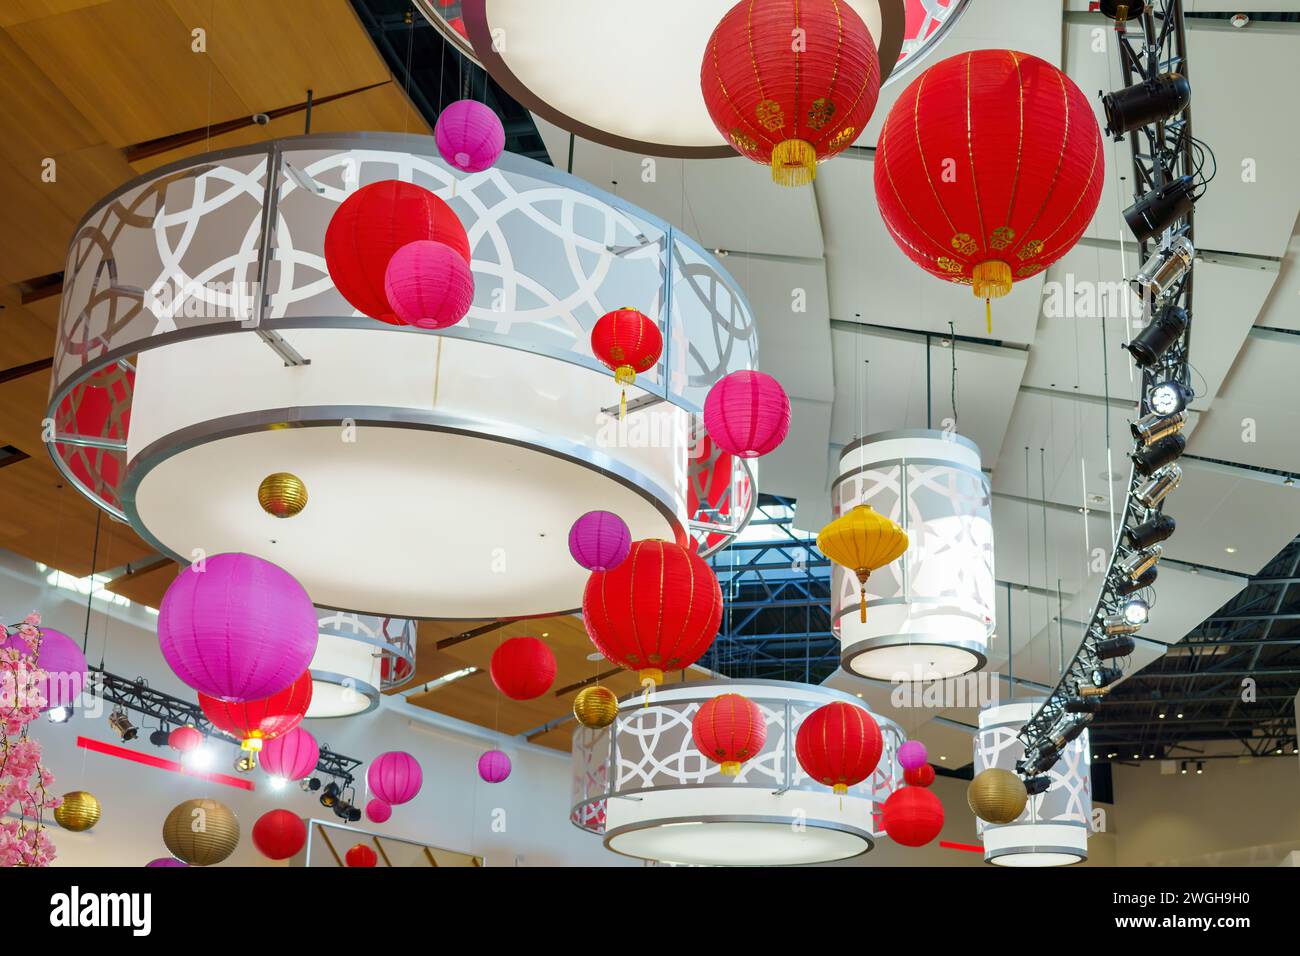 Dekorationen im chinesischen Stil zur Feier des Drachenjahres. Die Ornamente hängen von der Decke im Einkaufszentrum Vaughan Mills. Stockfoto